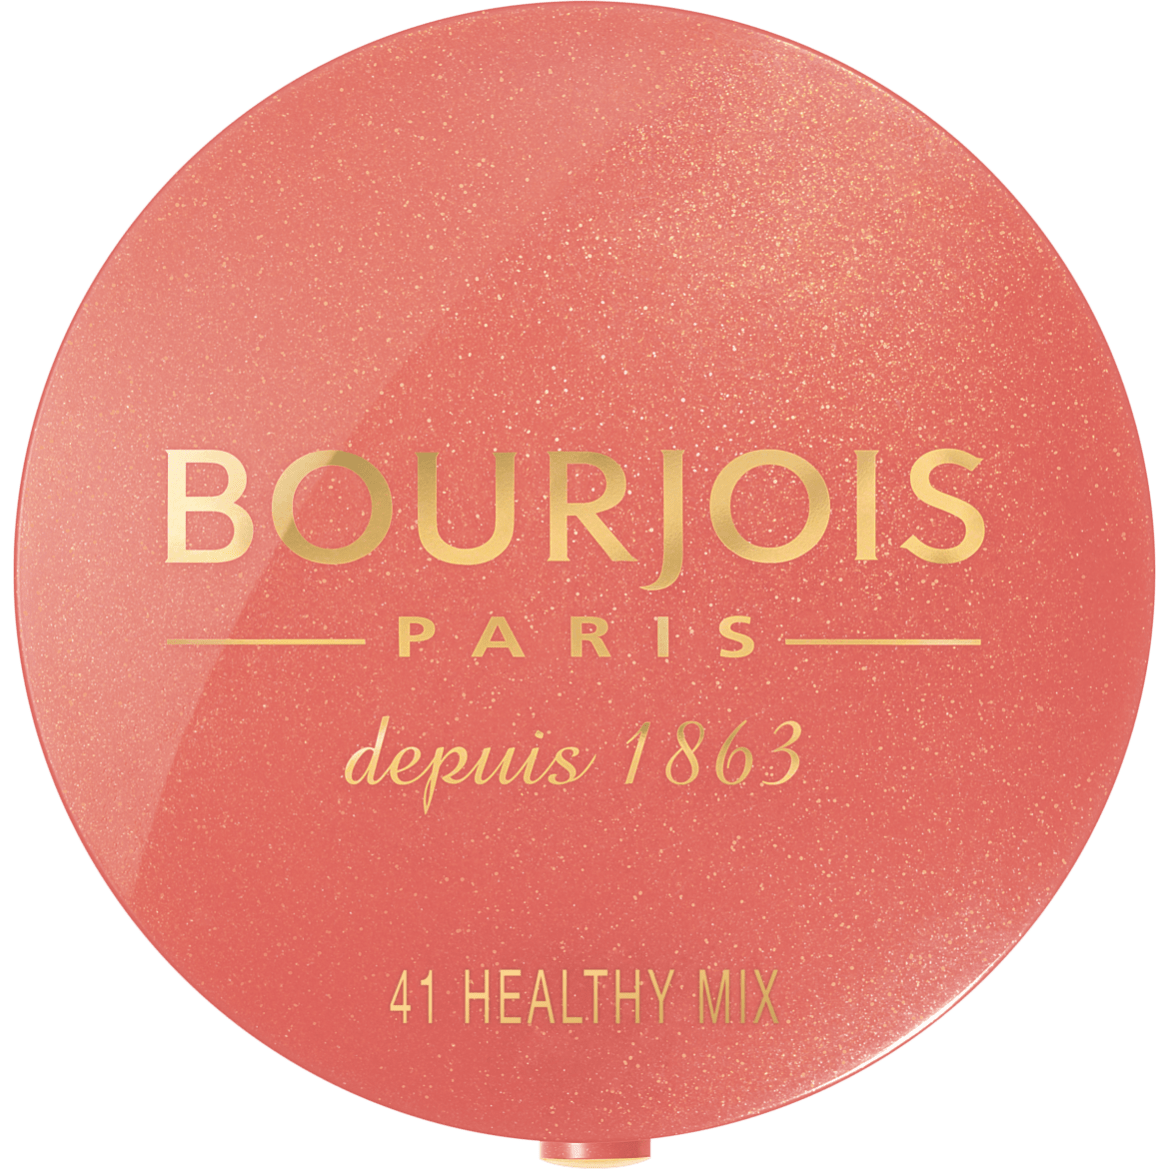 Bourjois: il brand francese è pronto a conquistare l'Italia